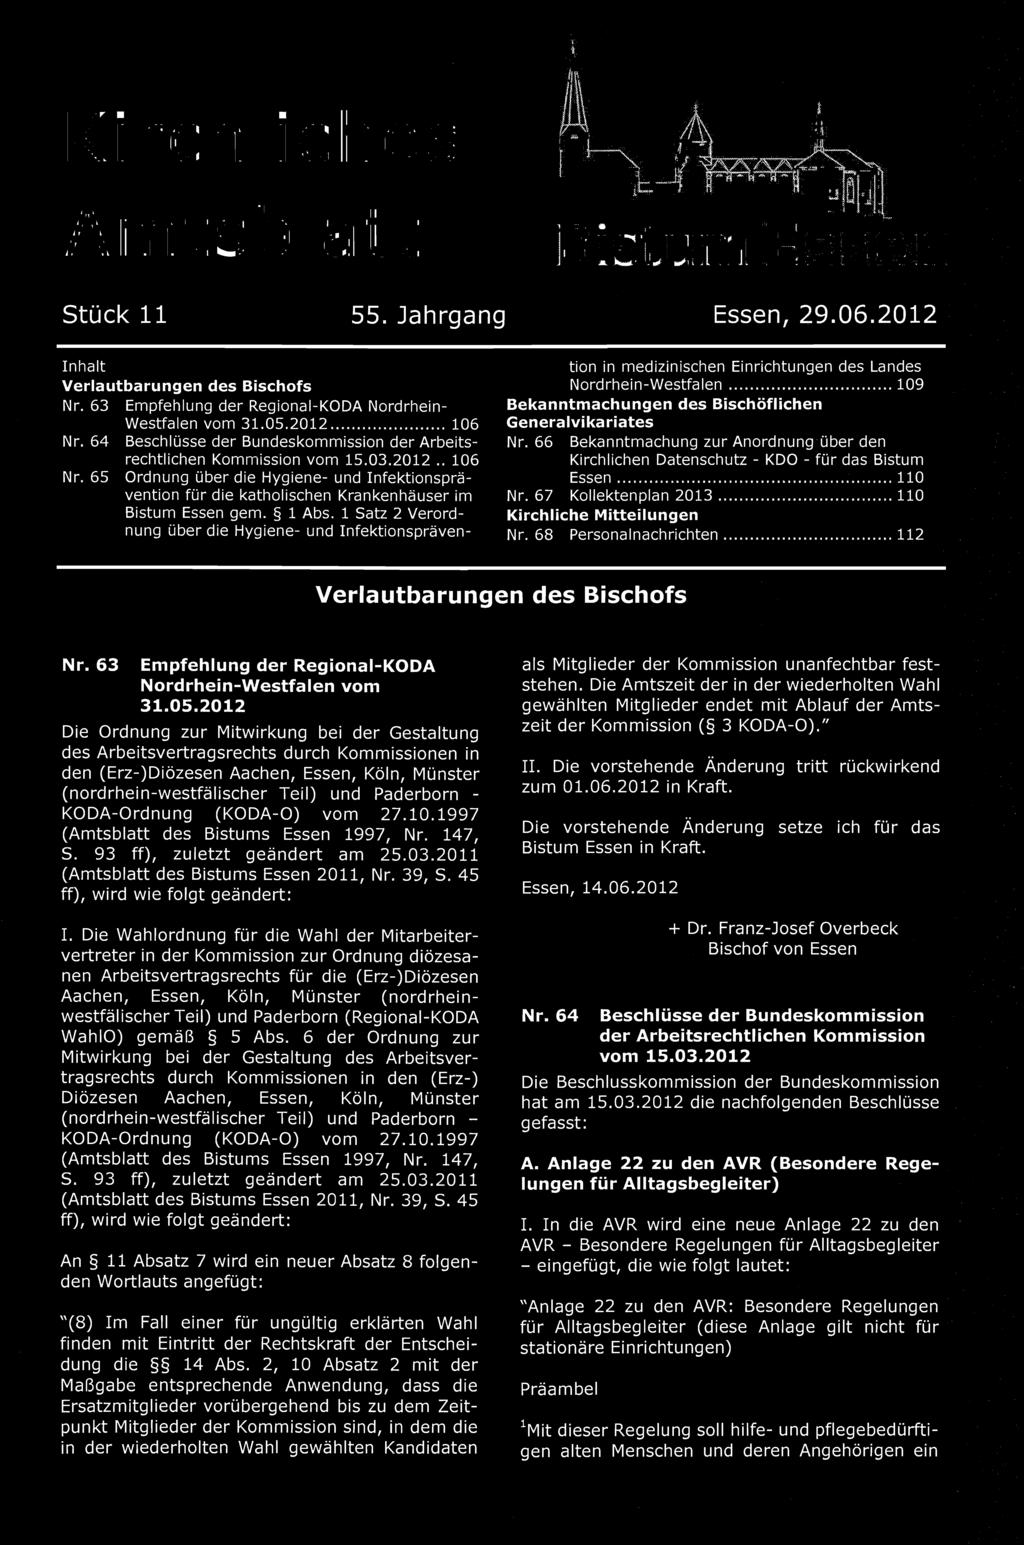 66 Bekanntmachung zur Anordnung über den Kirchlichen Datenschutz - KDO - für das Bistum Essen... 110 Nr. 67 Kollektenplan 2013... 110 Kirchliche Mitteilungen Nr. 68 Personalnachrichten.